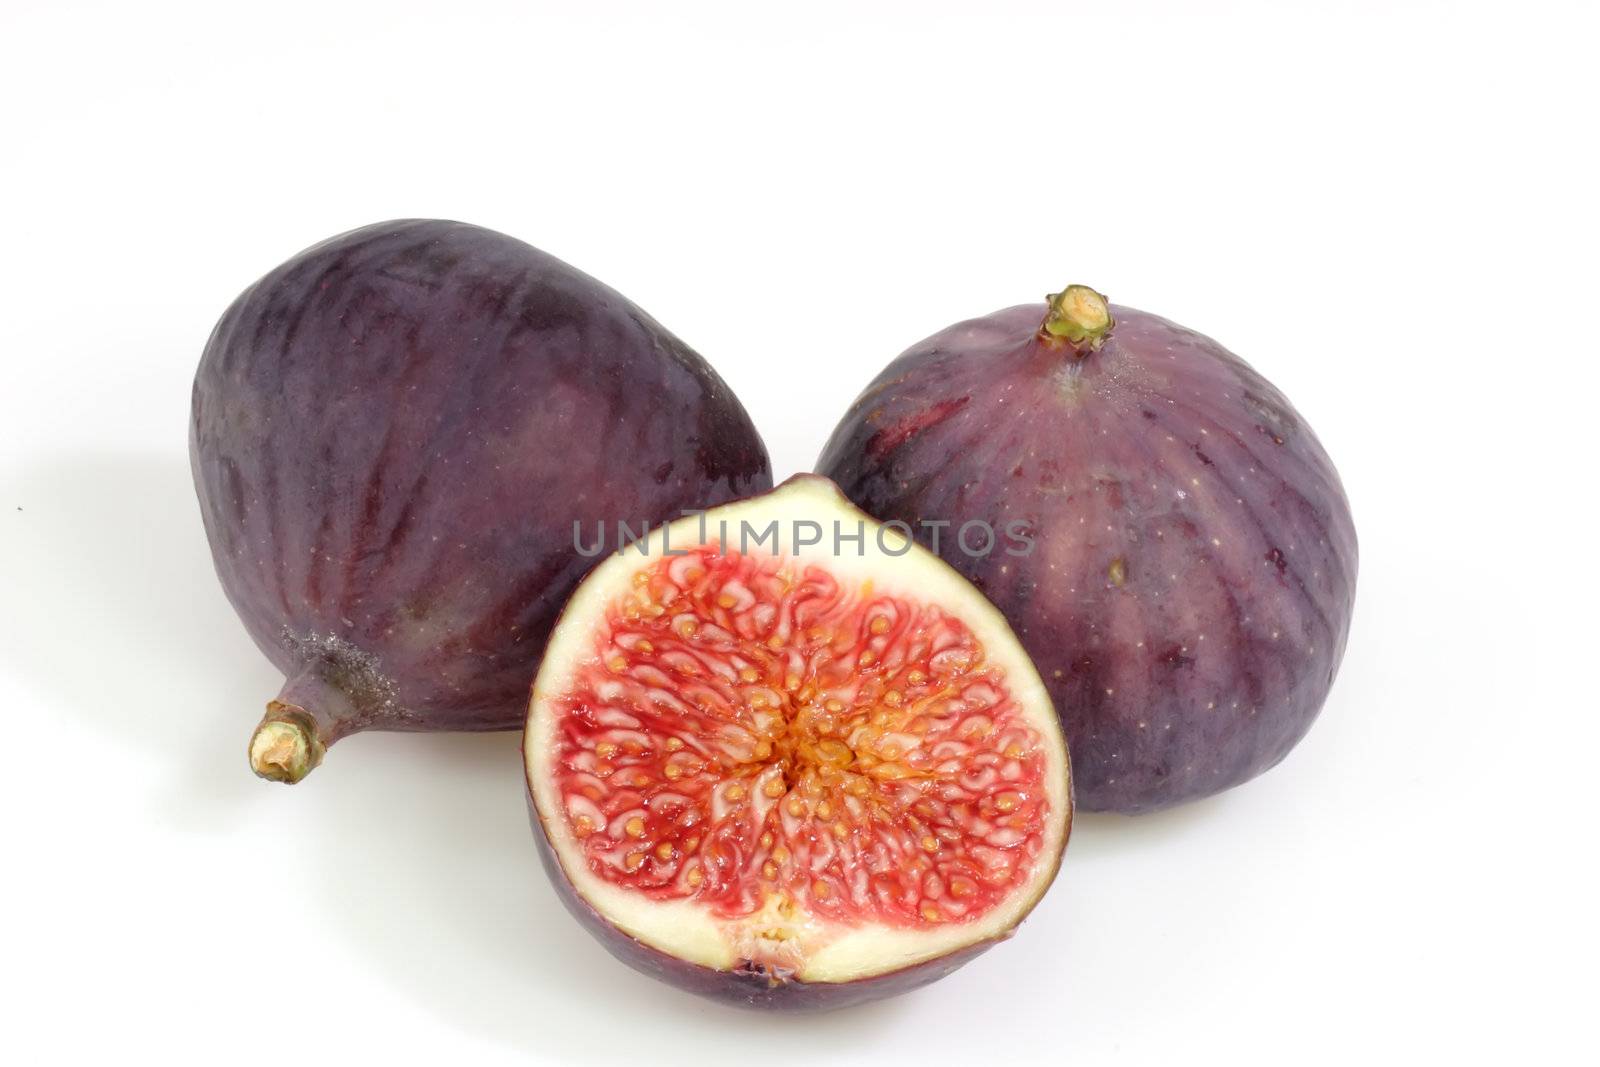 Figs by Teamarbeit